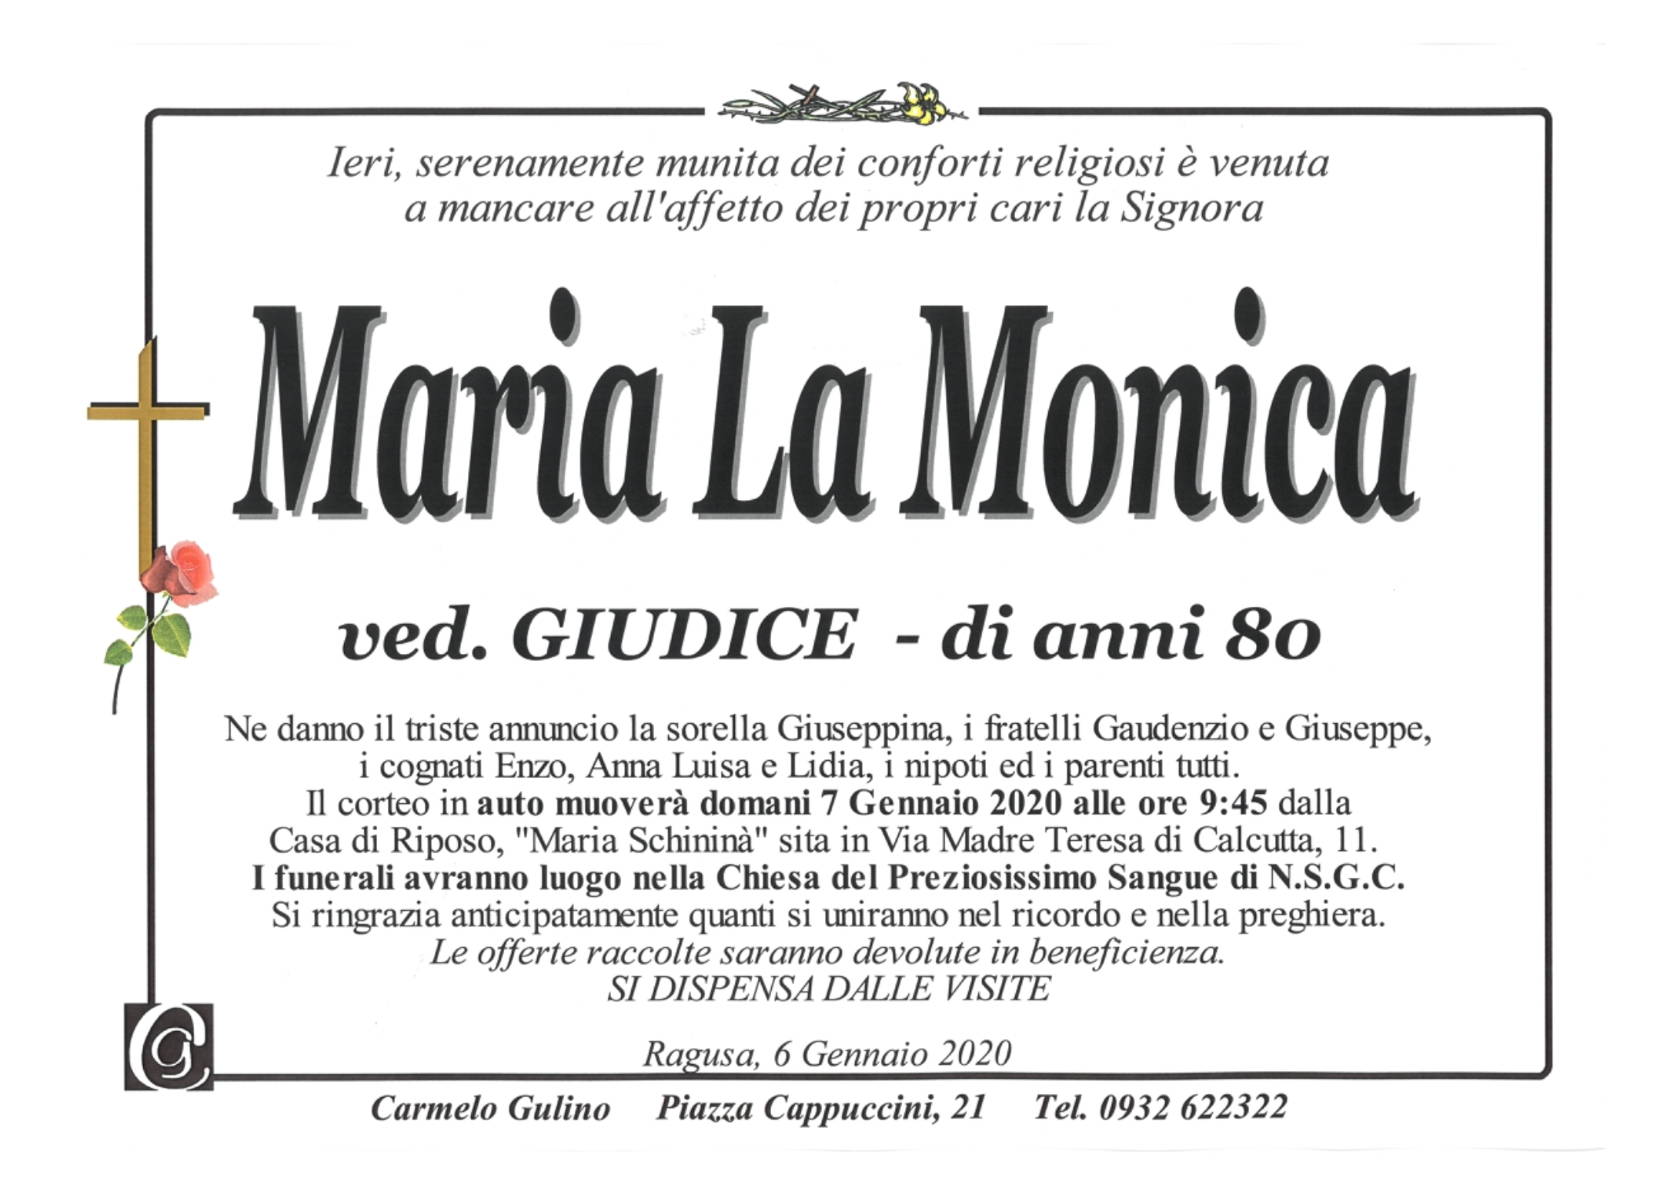 Maria La Monica